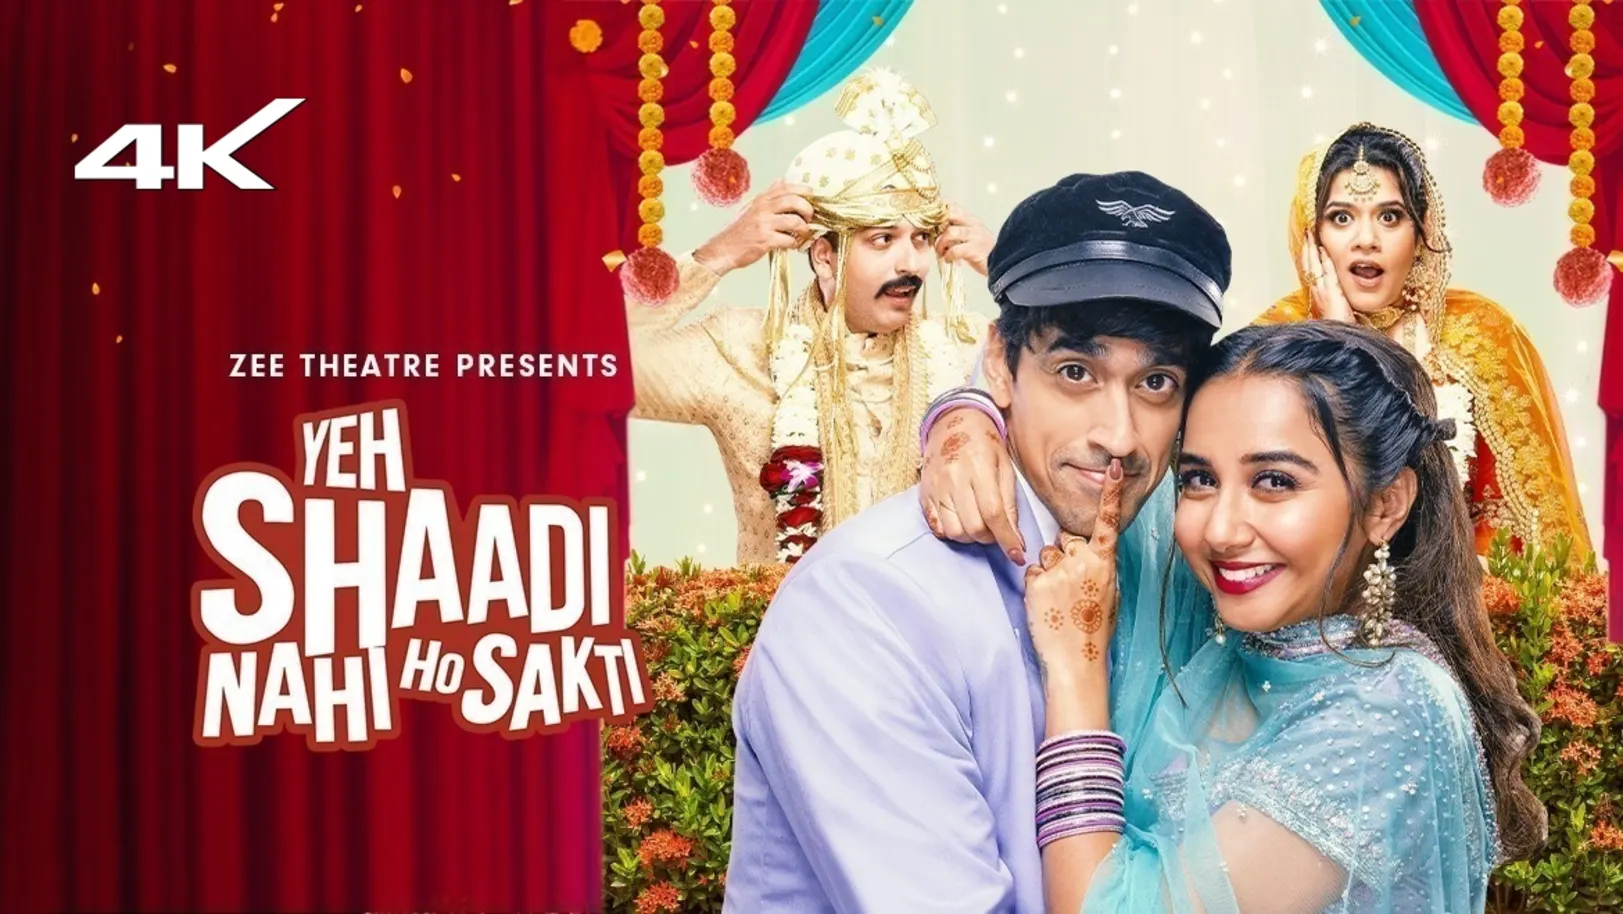 Yeh Shaadi Nahi Ho Sakti Movie